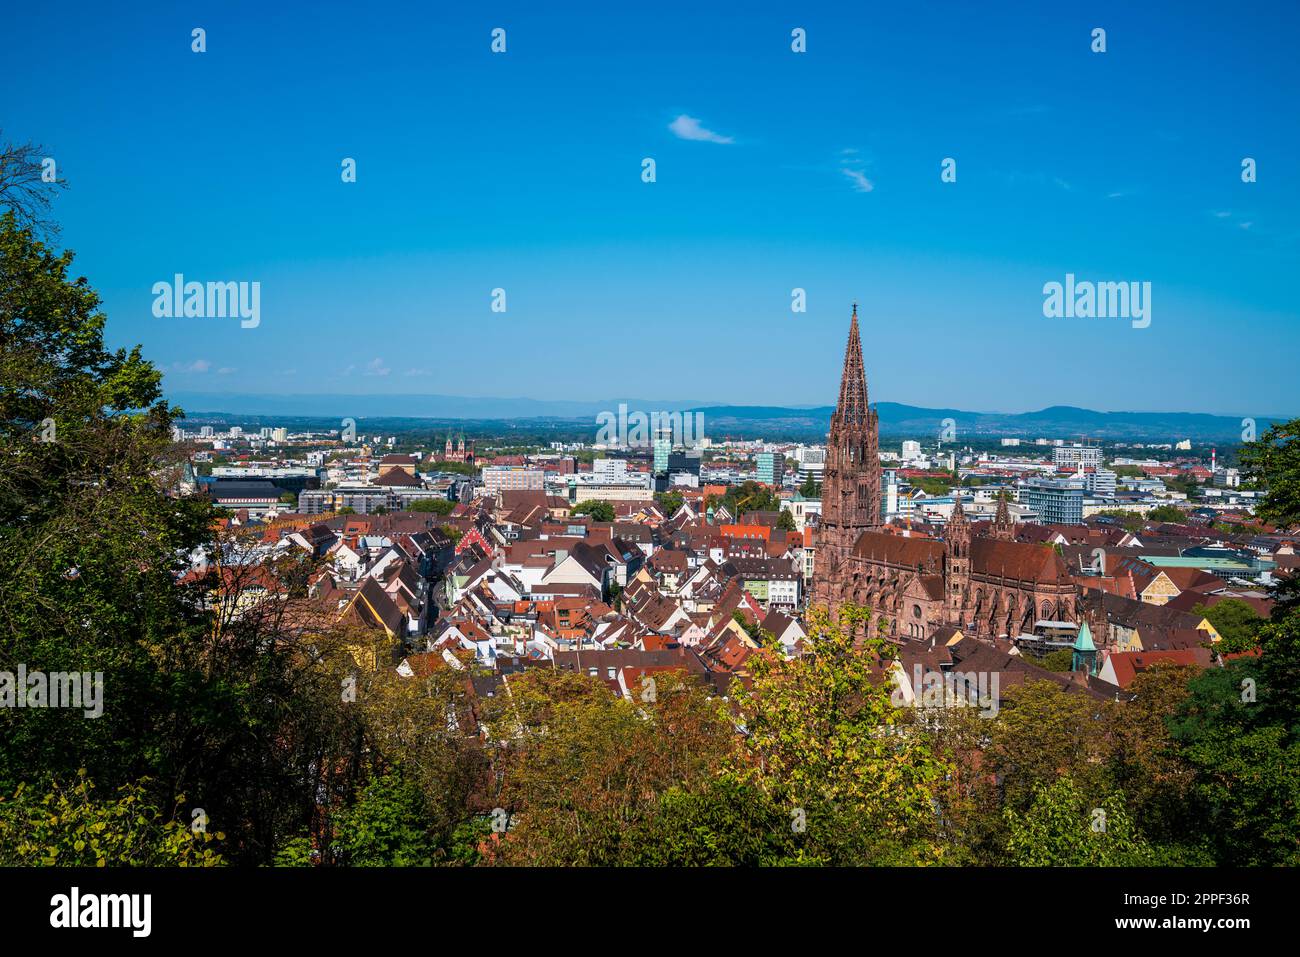 Alemania, Freiburg im breisgau ciudad baden schwarzwald vista panorámica del horizonte de la ciudad vieja sobre el techo y el edificio de la iglesia de muenster detrás de árboles verdes Foto de stock